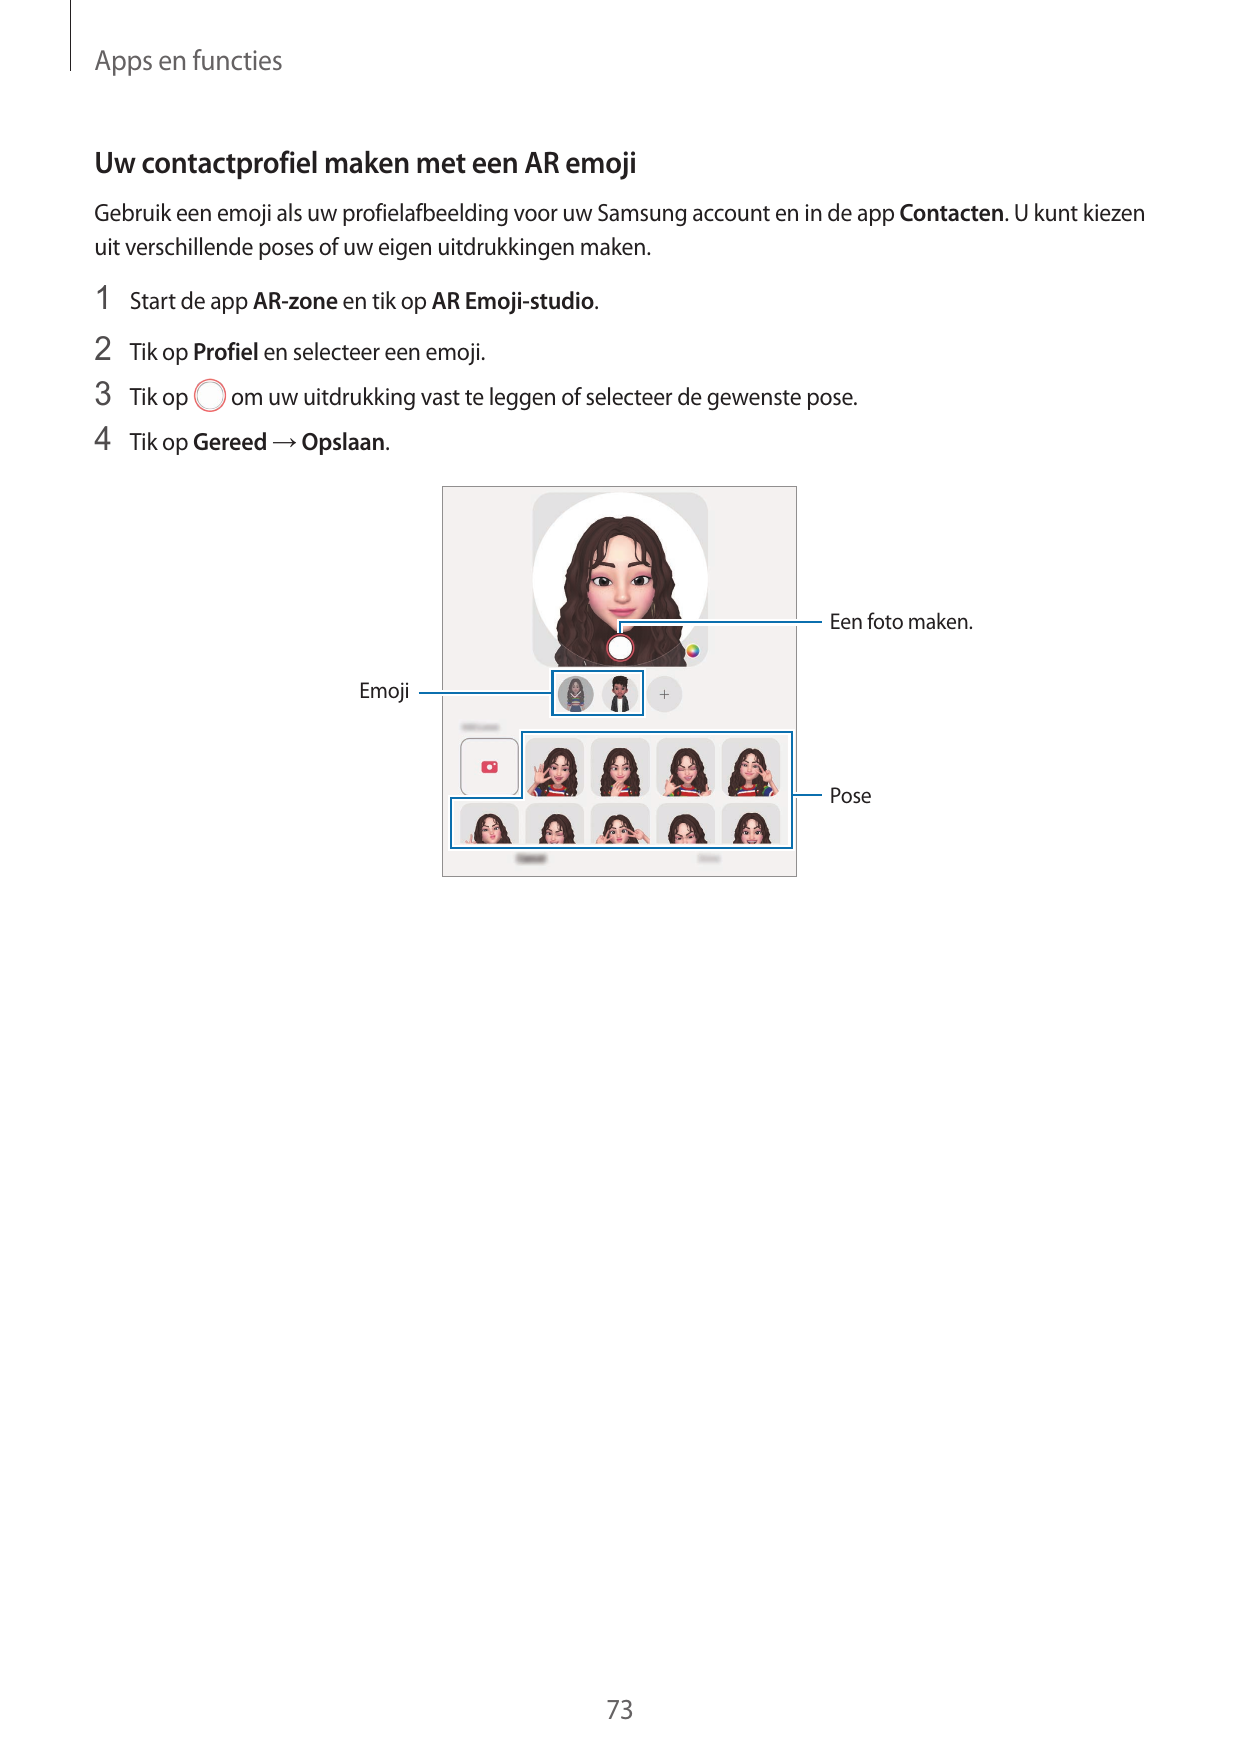 Apps en functiesUw contactprofiel maken met een AR emojiGebruik een emoji als uw profielafbeelding voor uw Samsung account en in